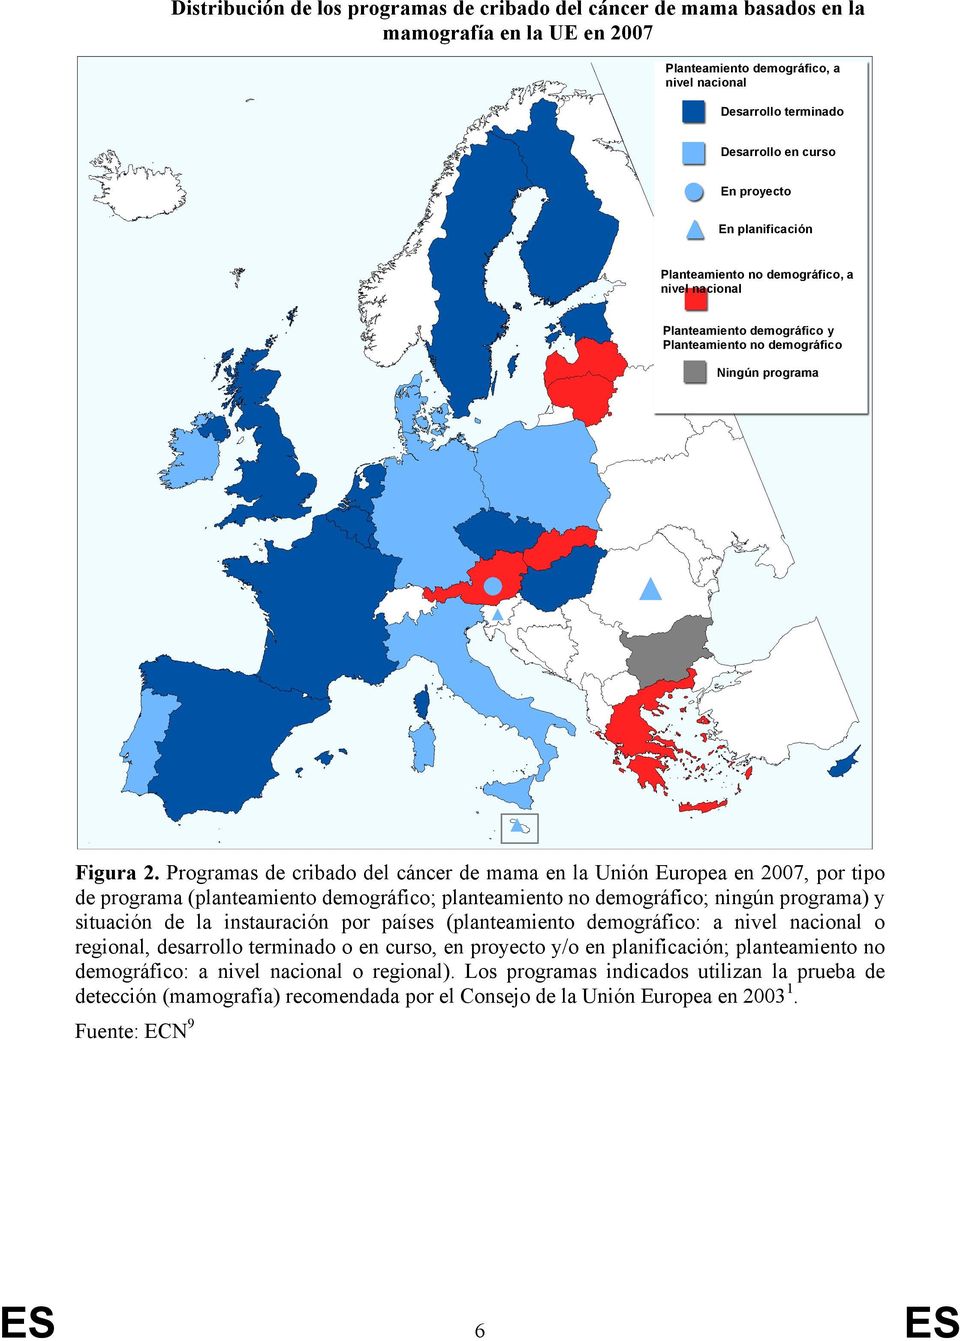 Programas de cribado del cáncer de mama en la Unión Europea en 2007, por tipo de programa (planteamiento demográfico; planteamiento no demográfico; ningún programa) y situación de la instauración por